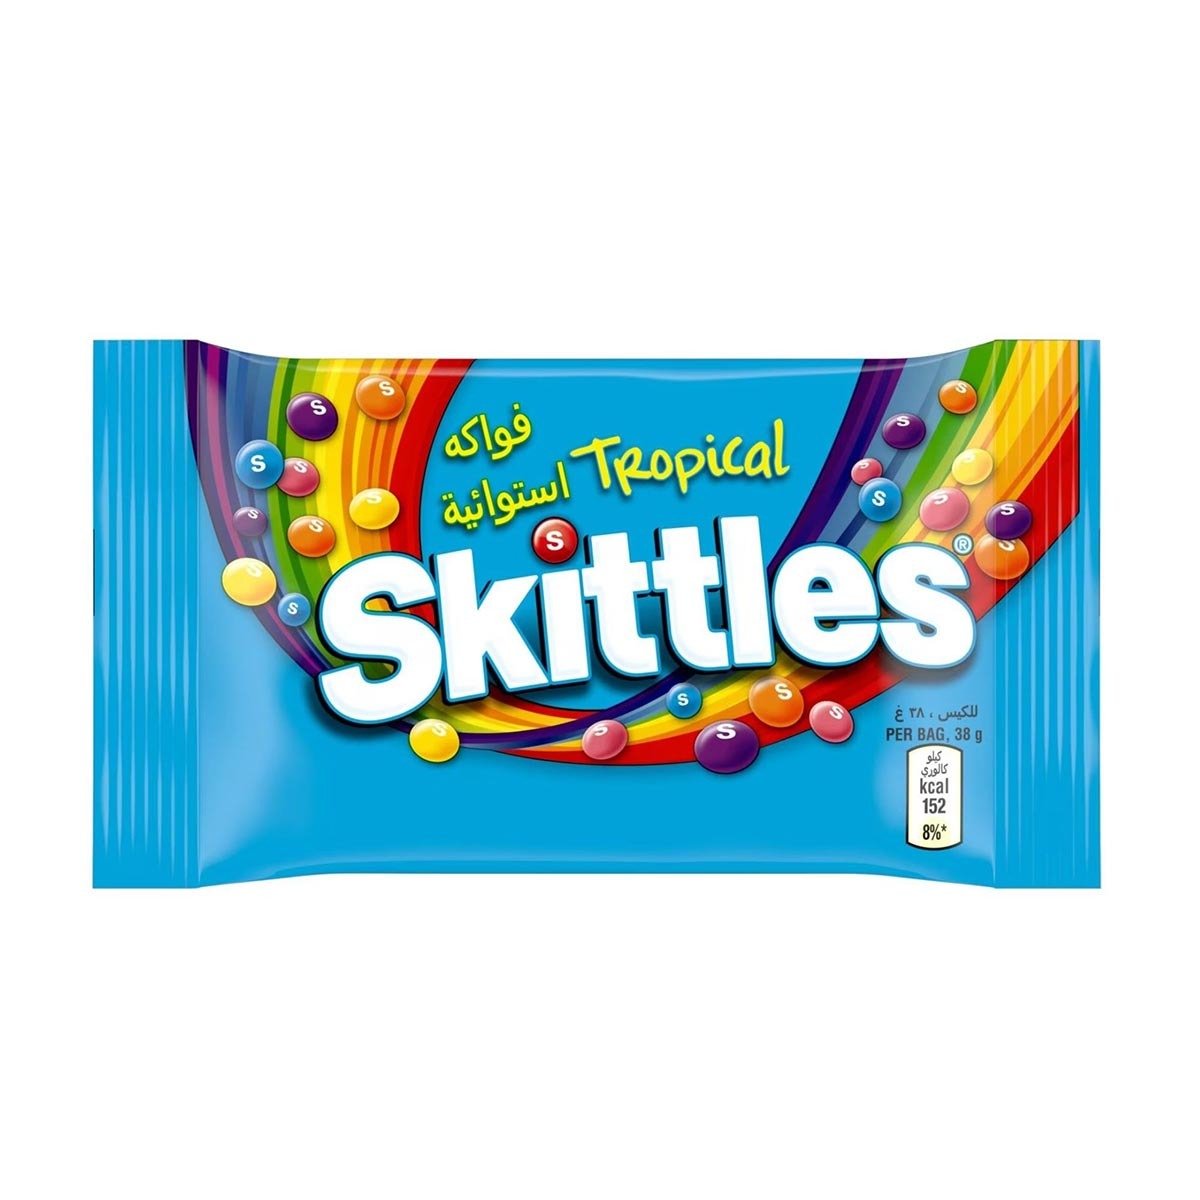 Skittles Tropical 38 g